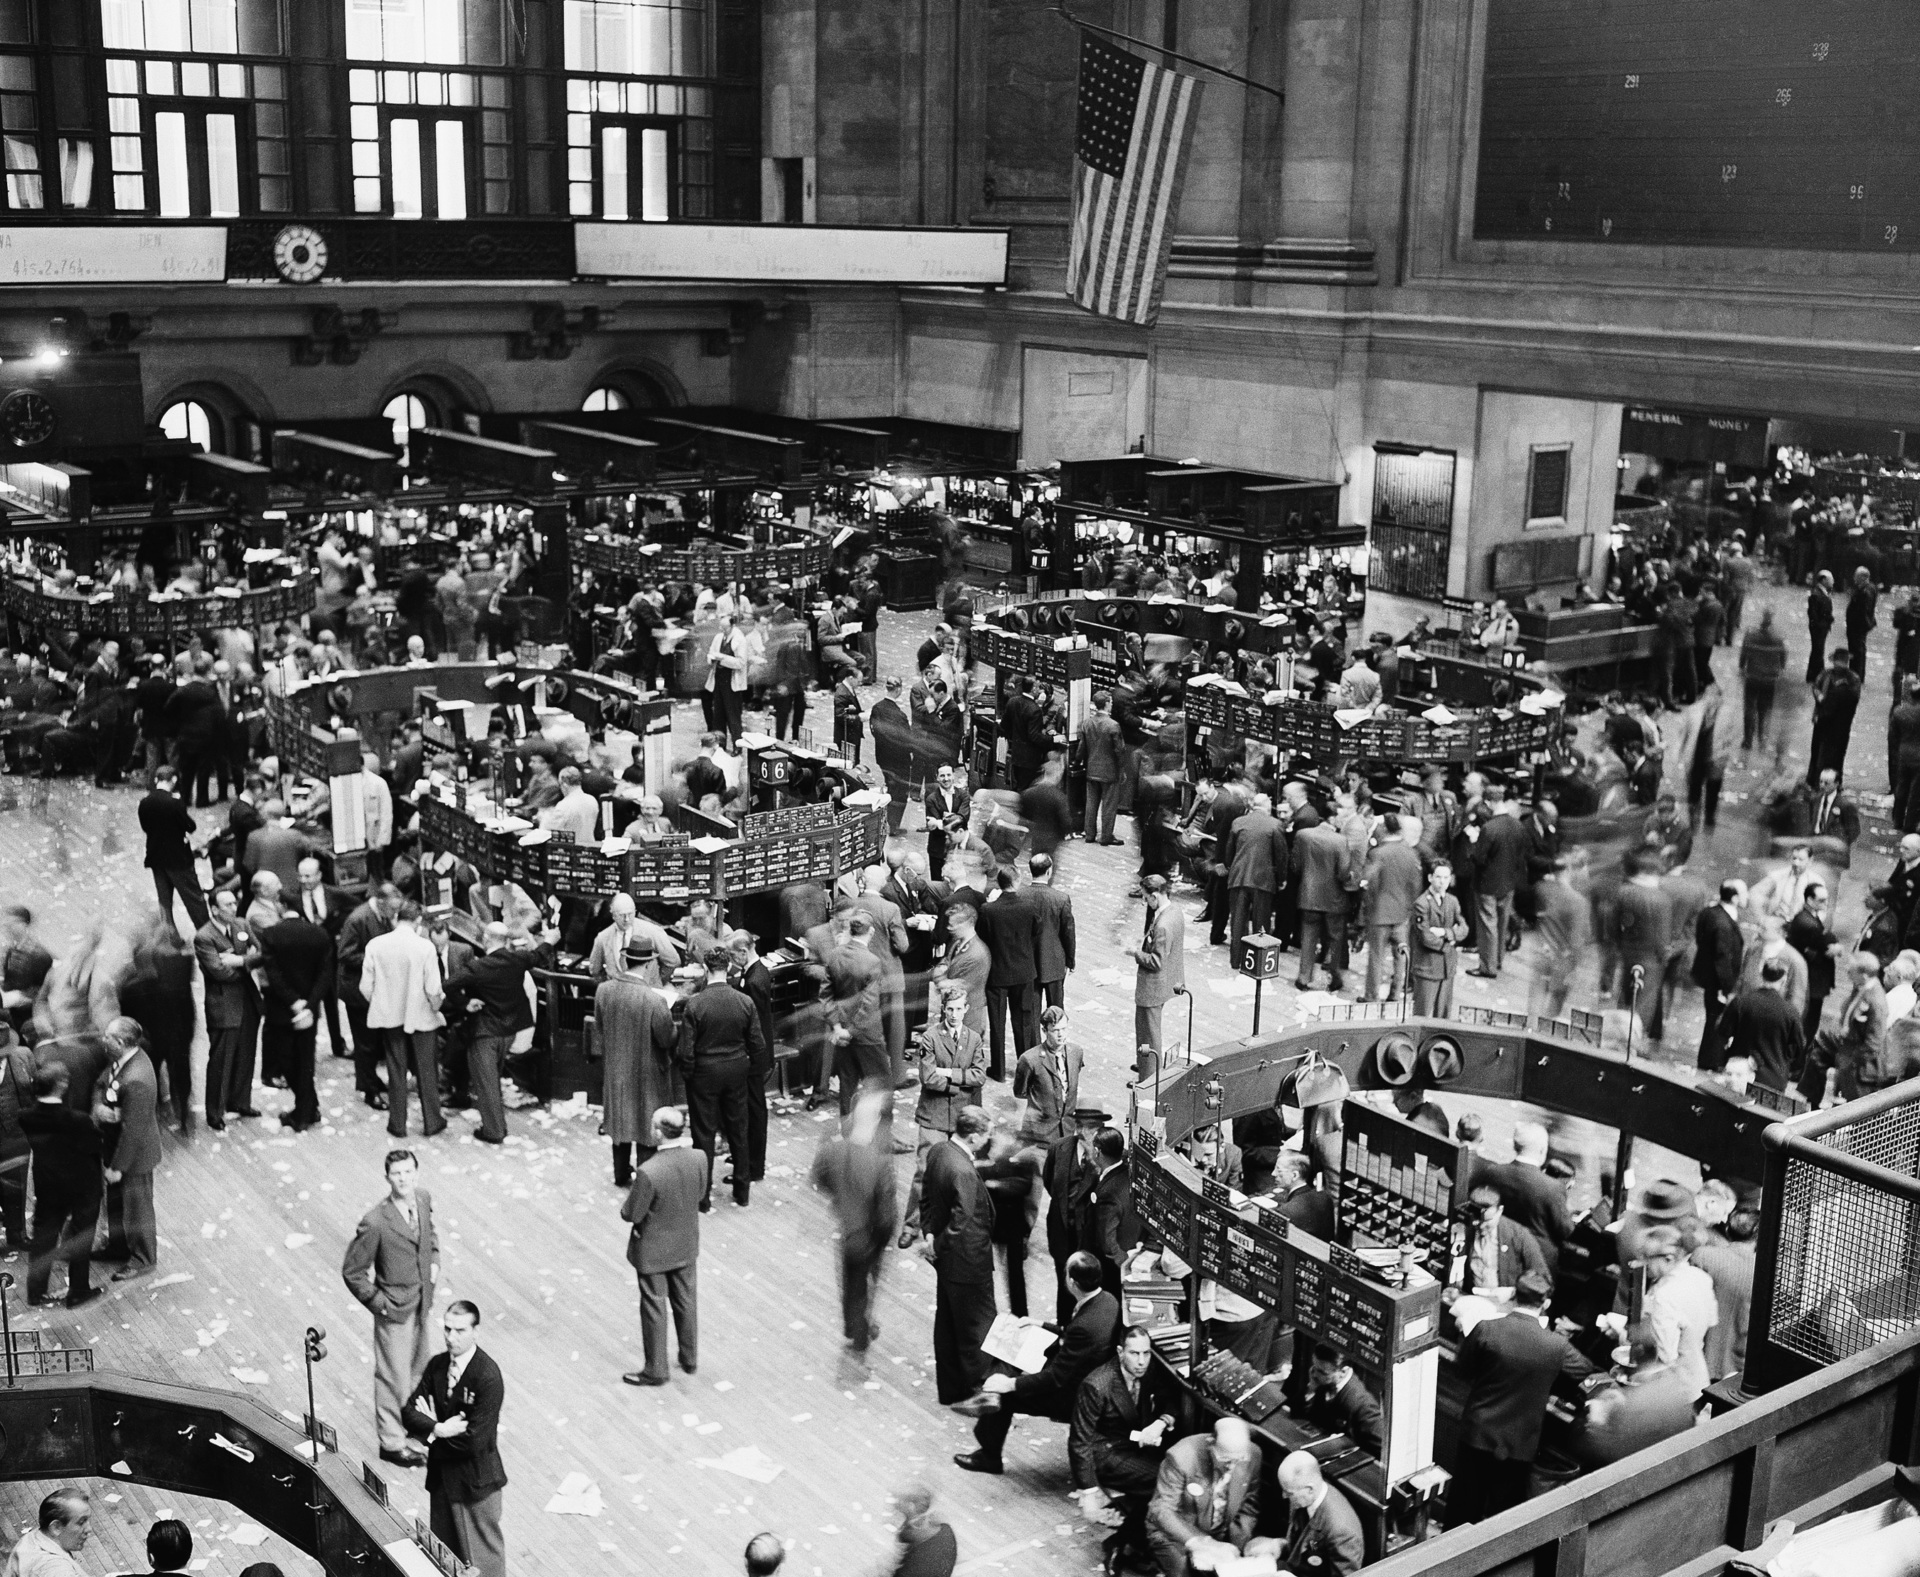 Stock Market Has Best July Since 1939